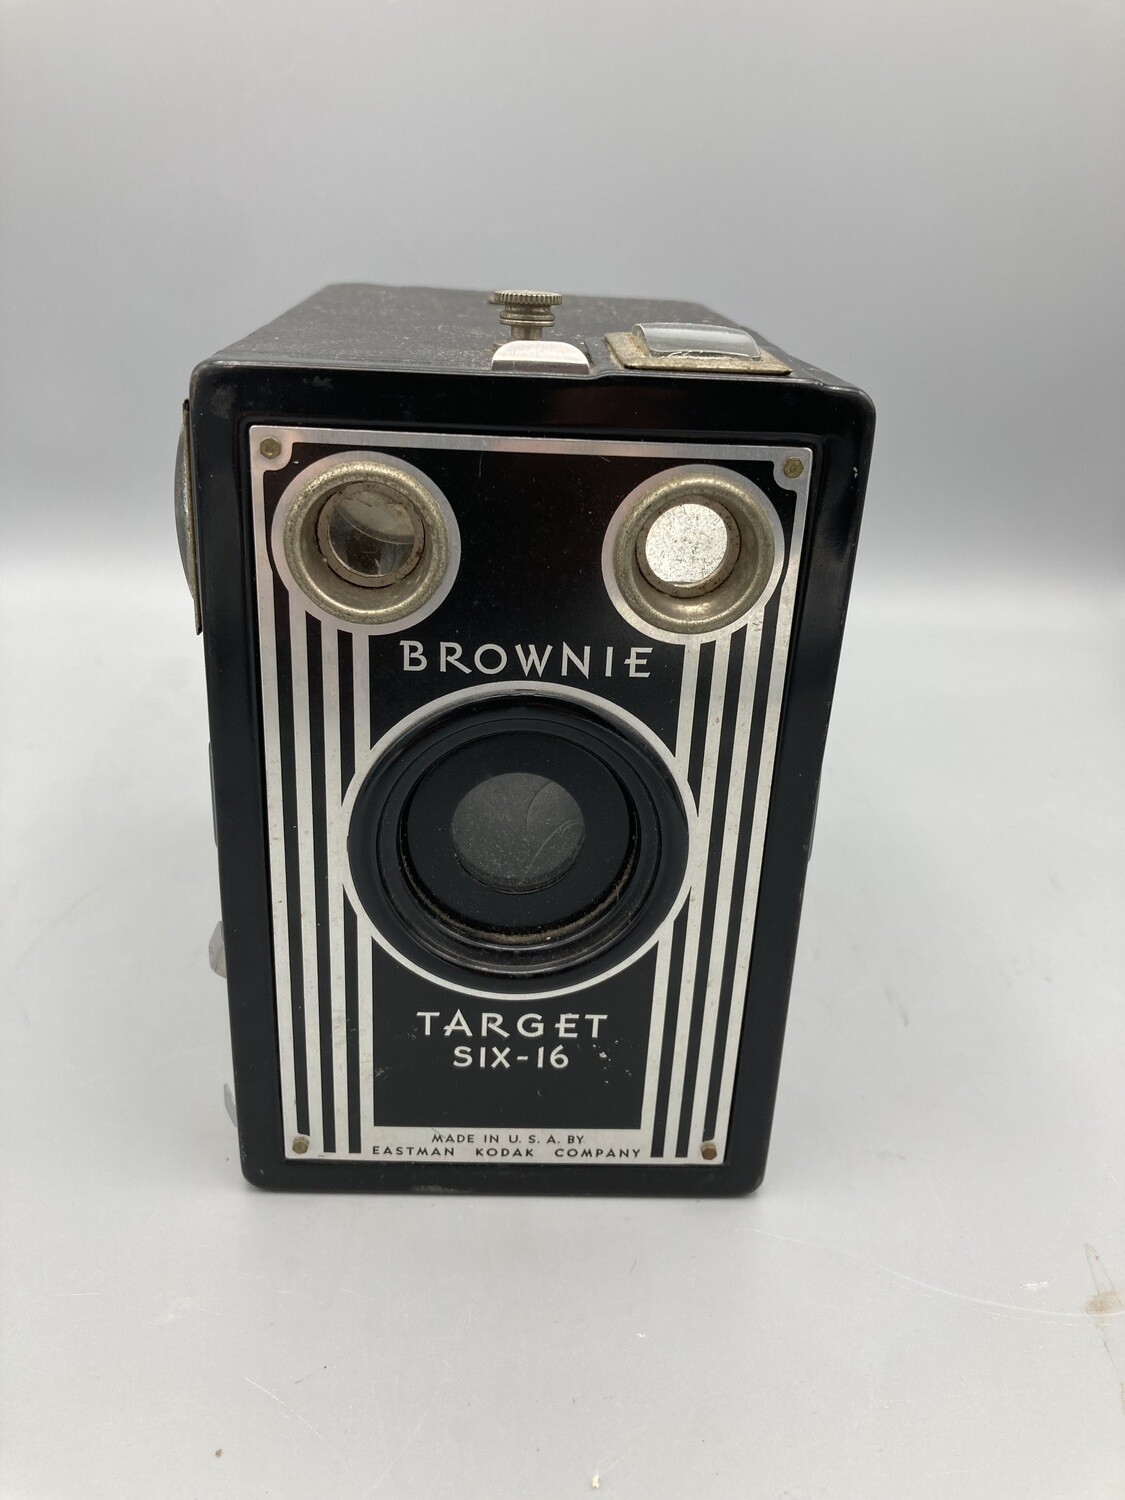 Kodak Brownie Target SIX-20 - no handle